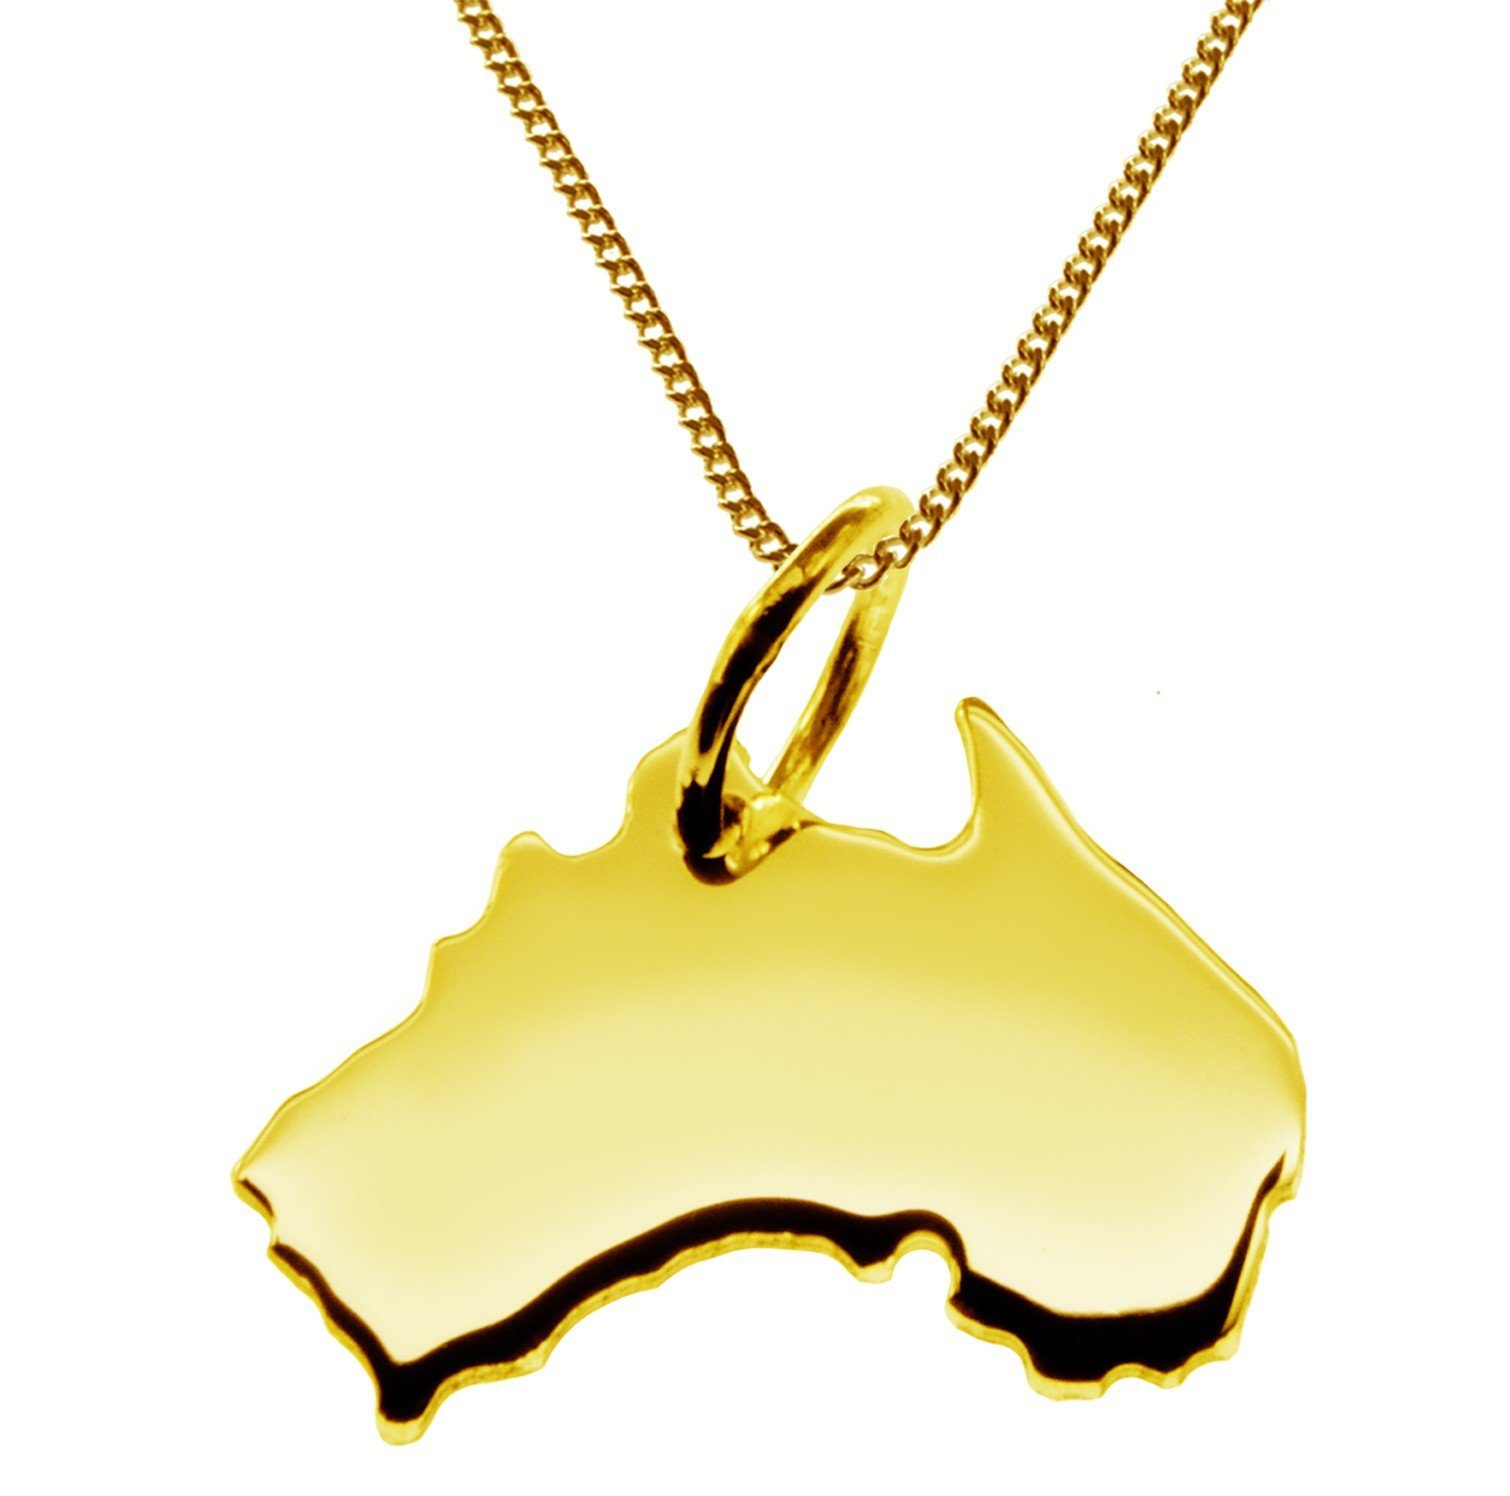 schmuckador Kette mit Anhänger 50cm Halskette + Australien Anhänger in 585 Gelbgold